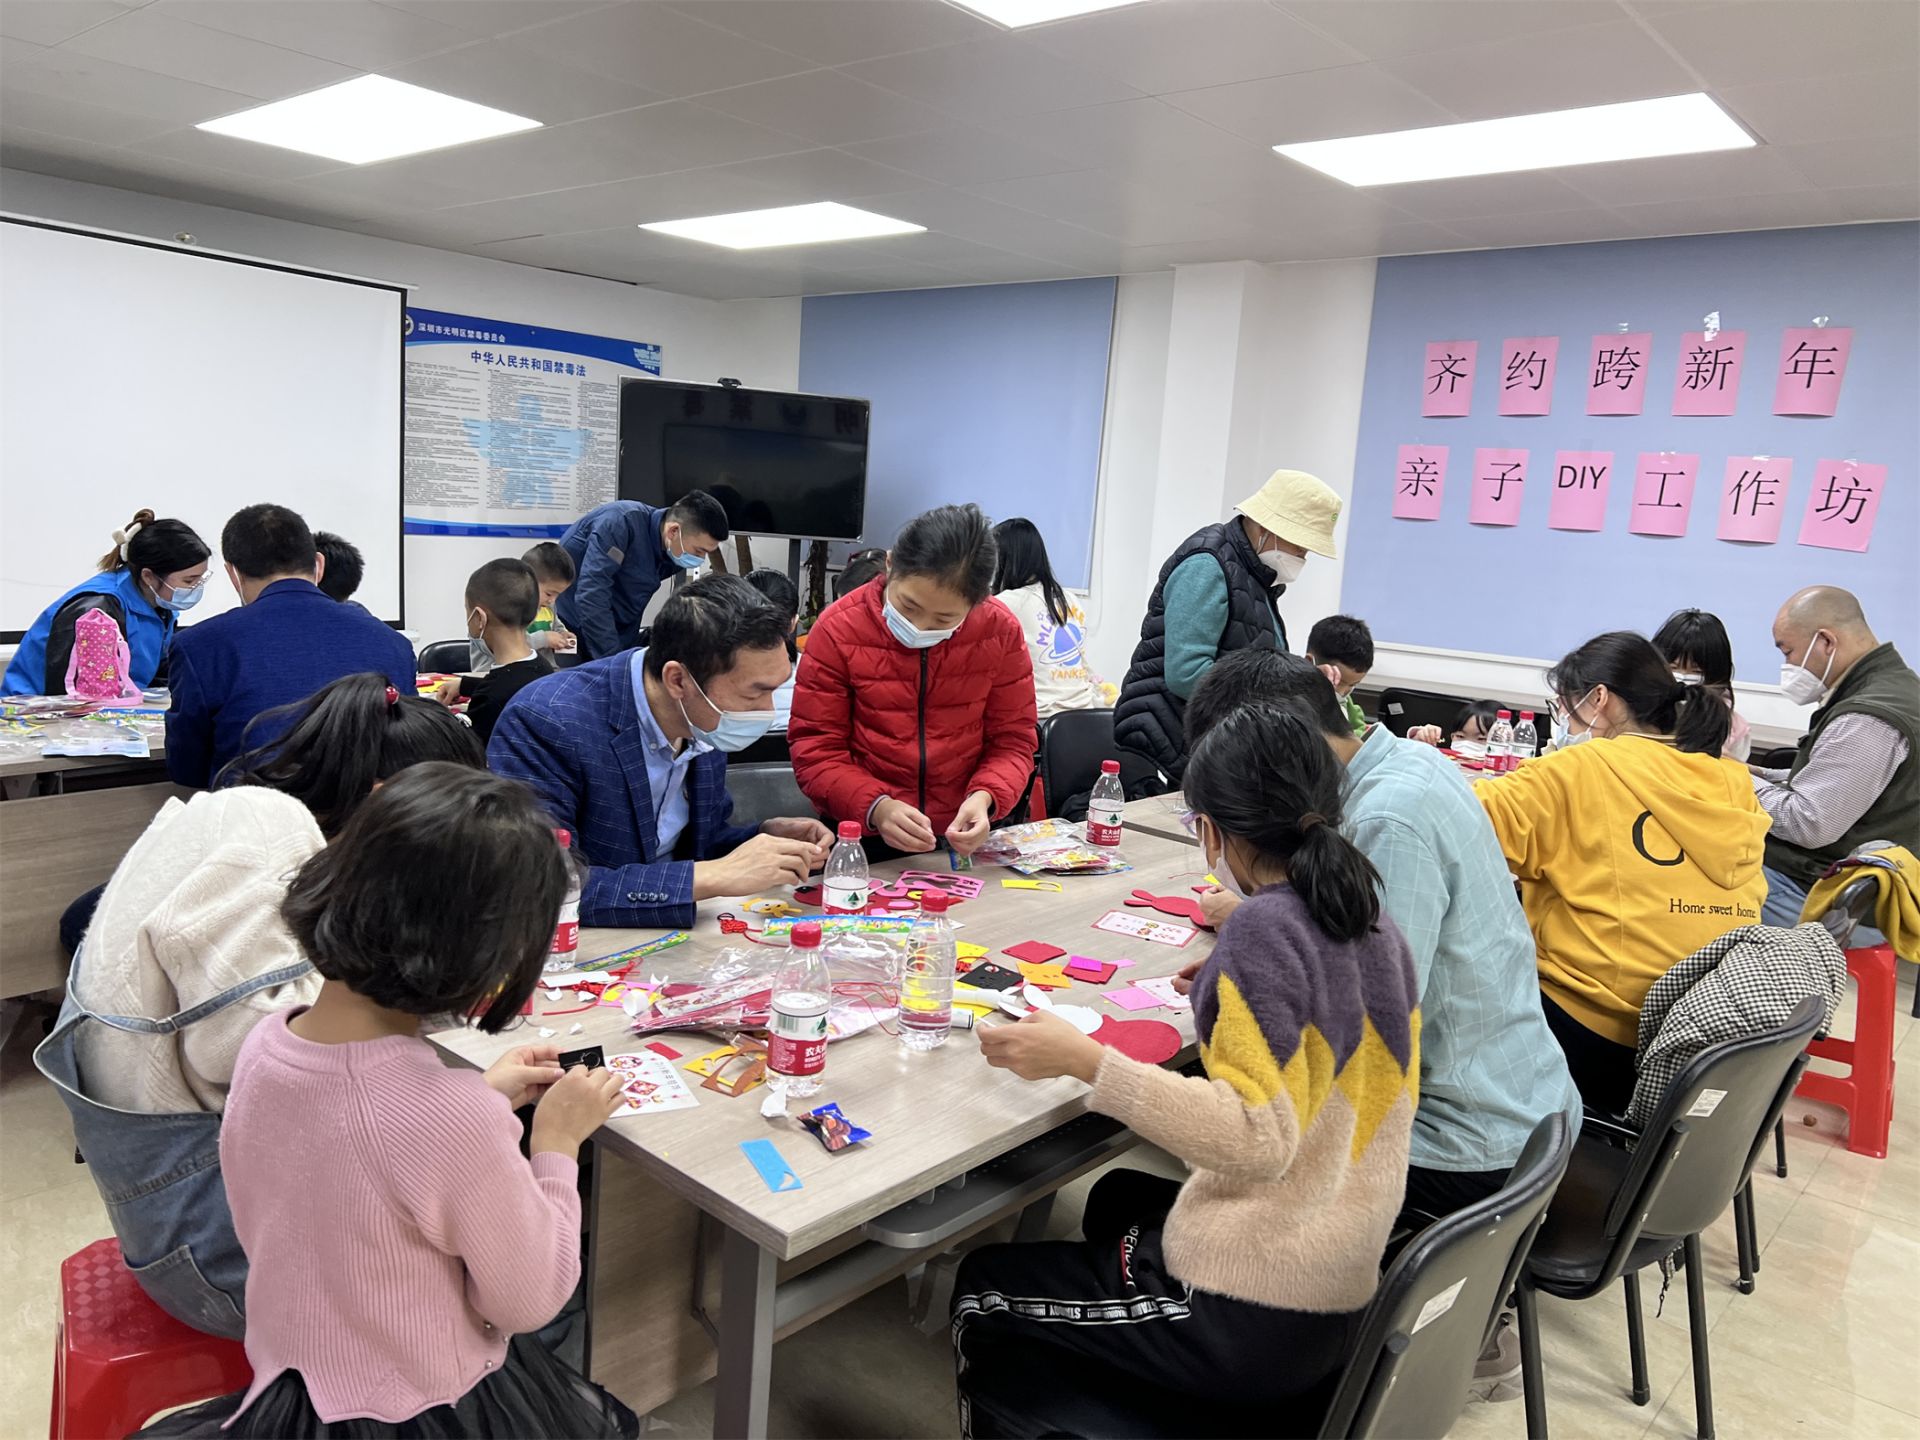 亲子游戏互动、春节挂饰制作……公明街道推出亲子DIY工作坊